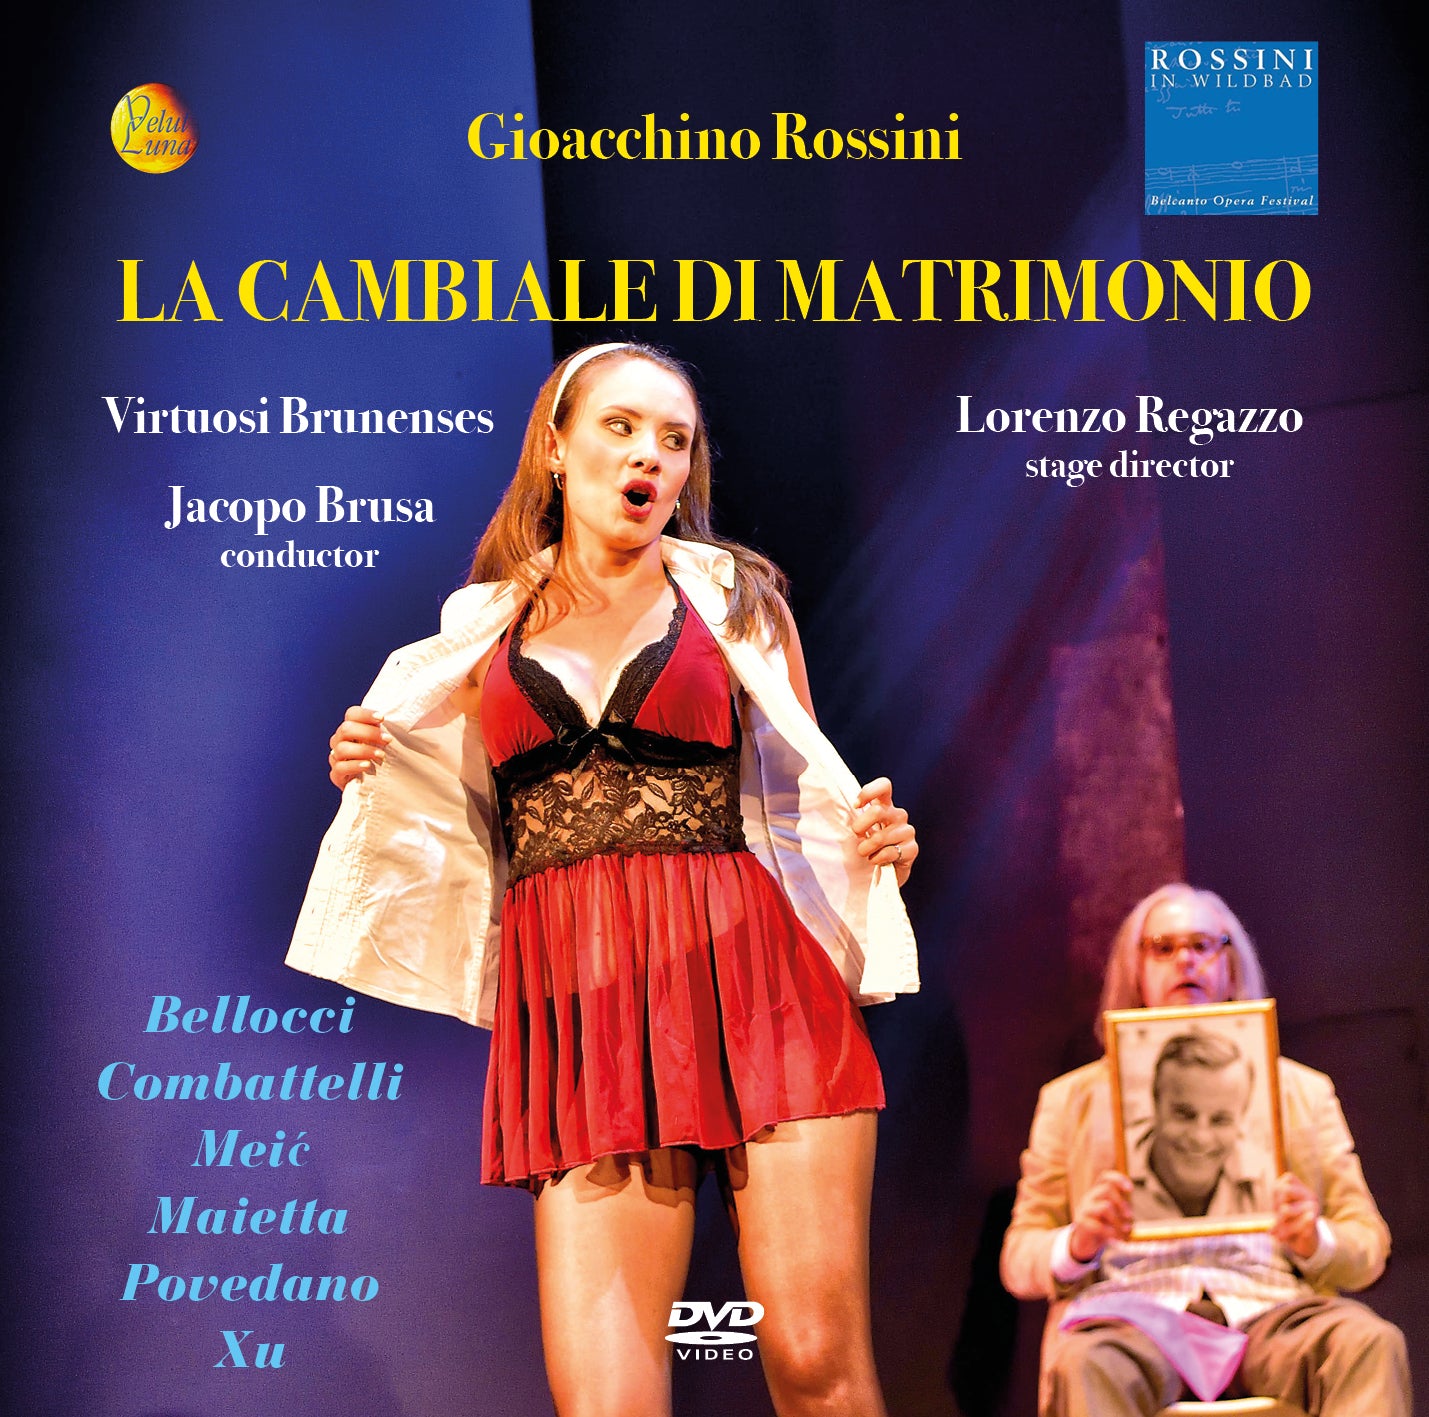 LA CAMBIALE DI MATRIMONIO - Gioachino Rossini